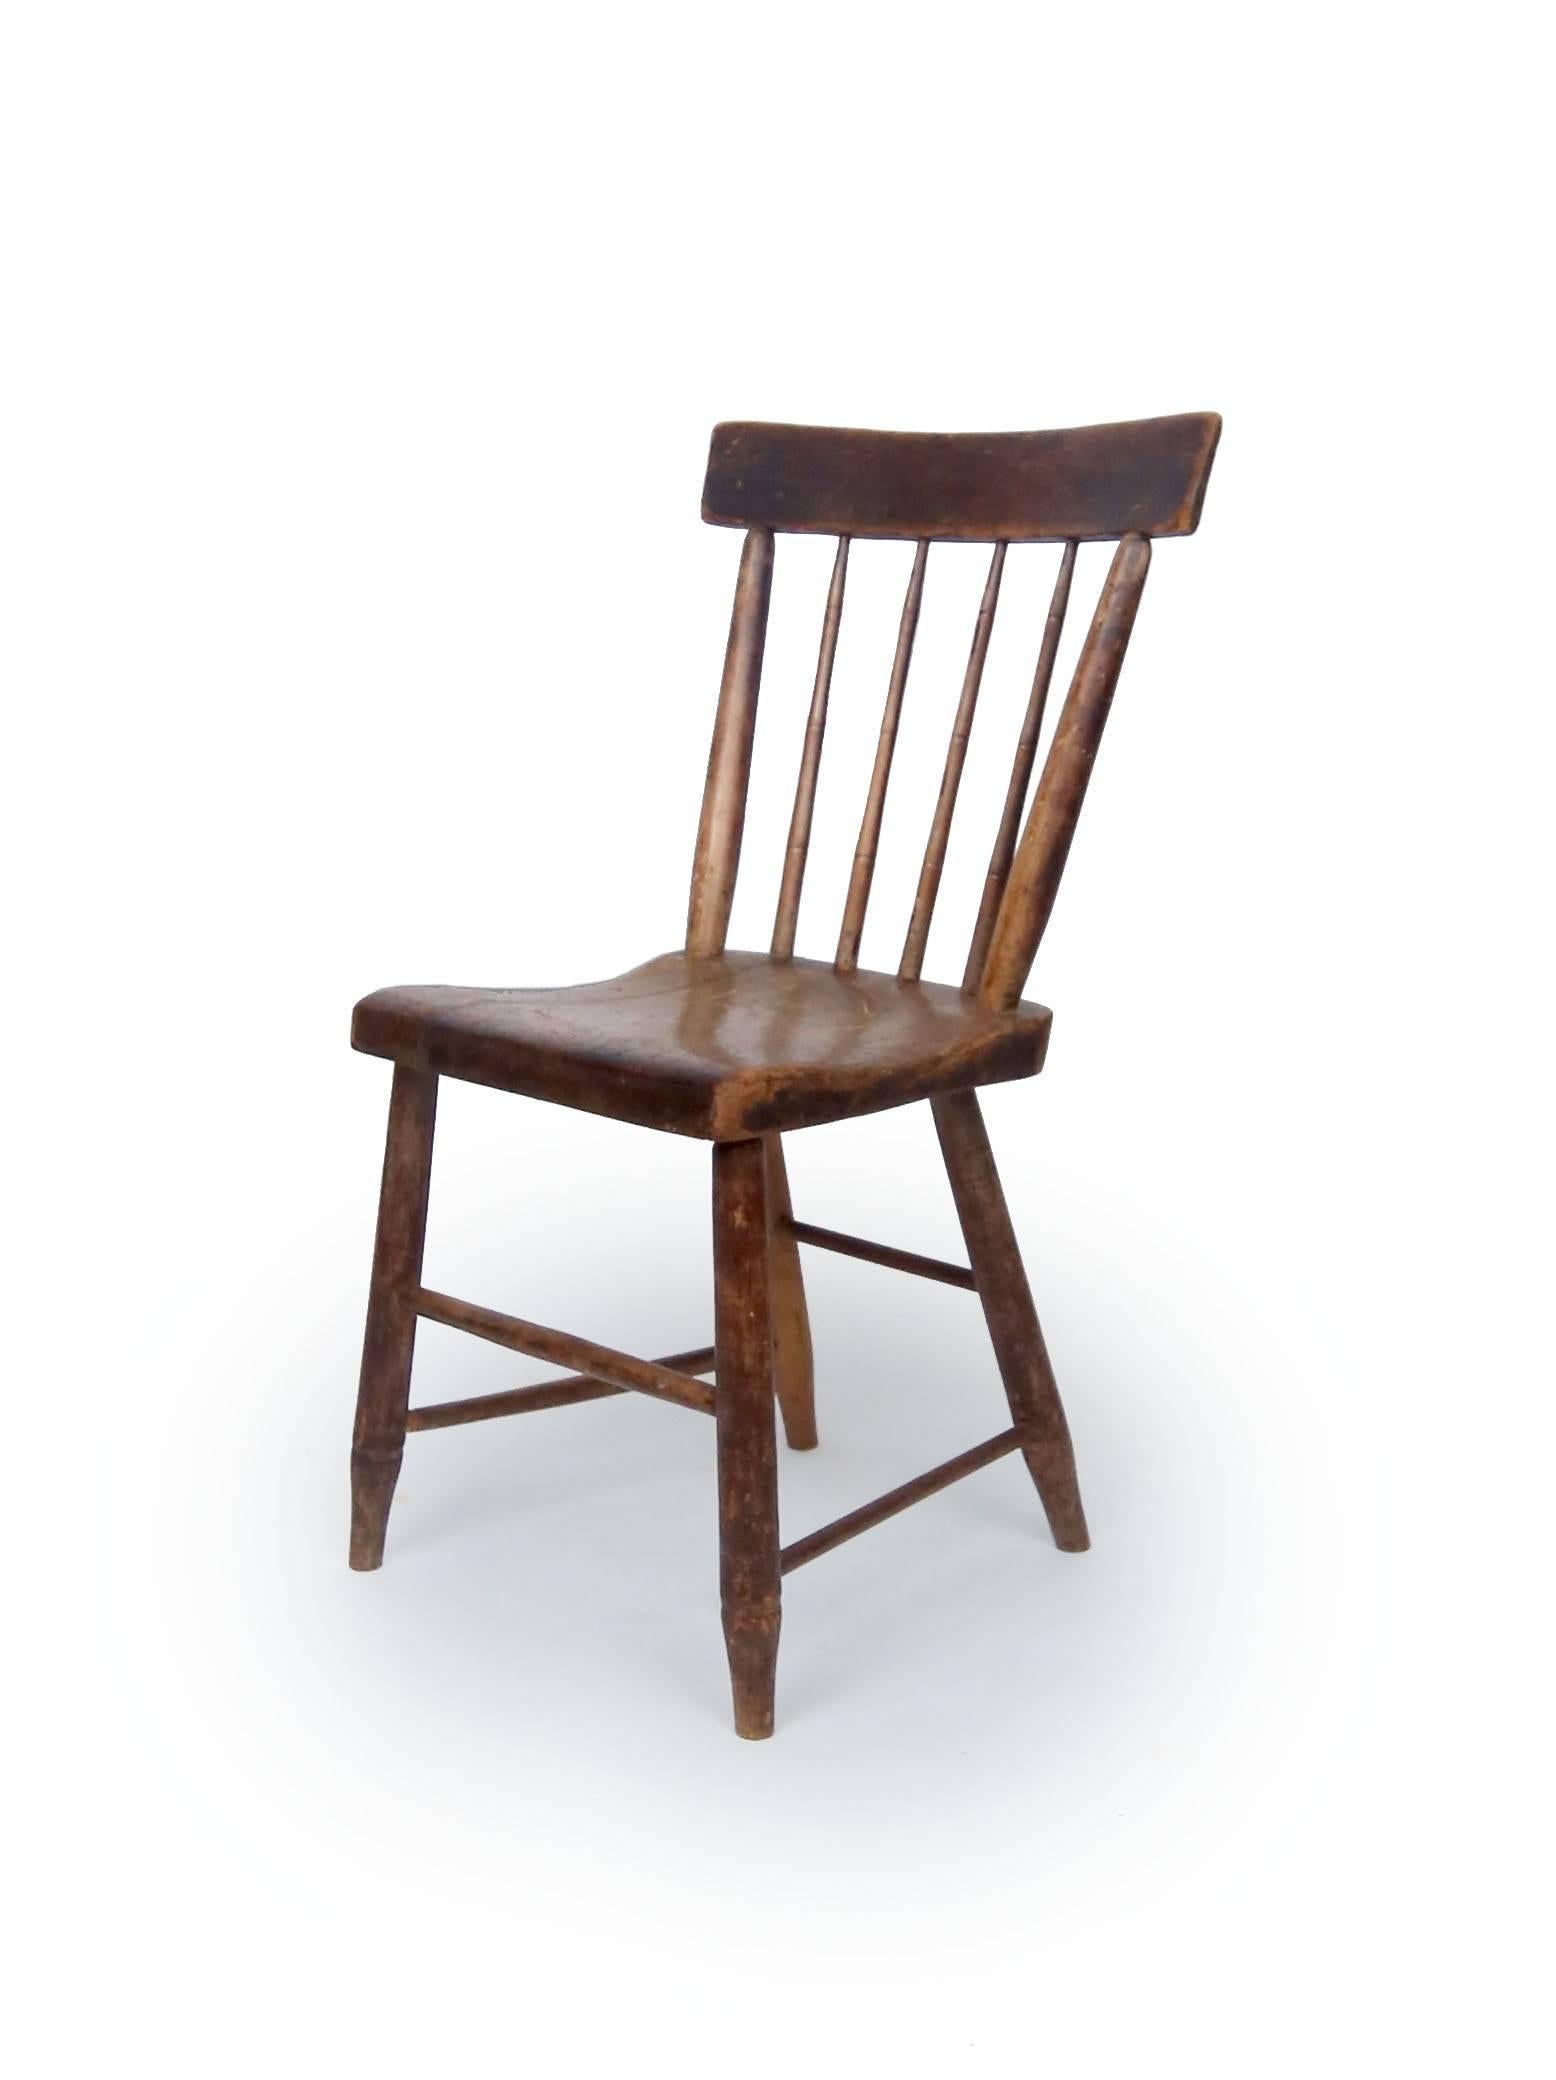 Ein hübscher Windsor-Stuhl mit Stangenrücken. Splats gedreht mit Bambus Hüfte Detail. Hickoryholz und Kiefer mit massiven Sitzbrettern, amerikanisch, um 1830.